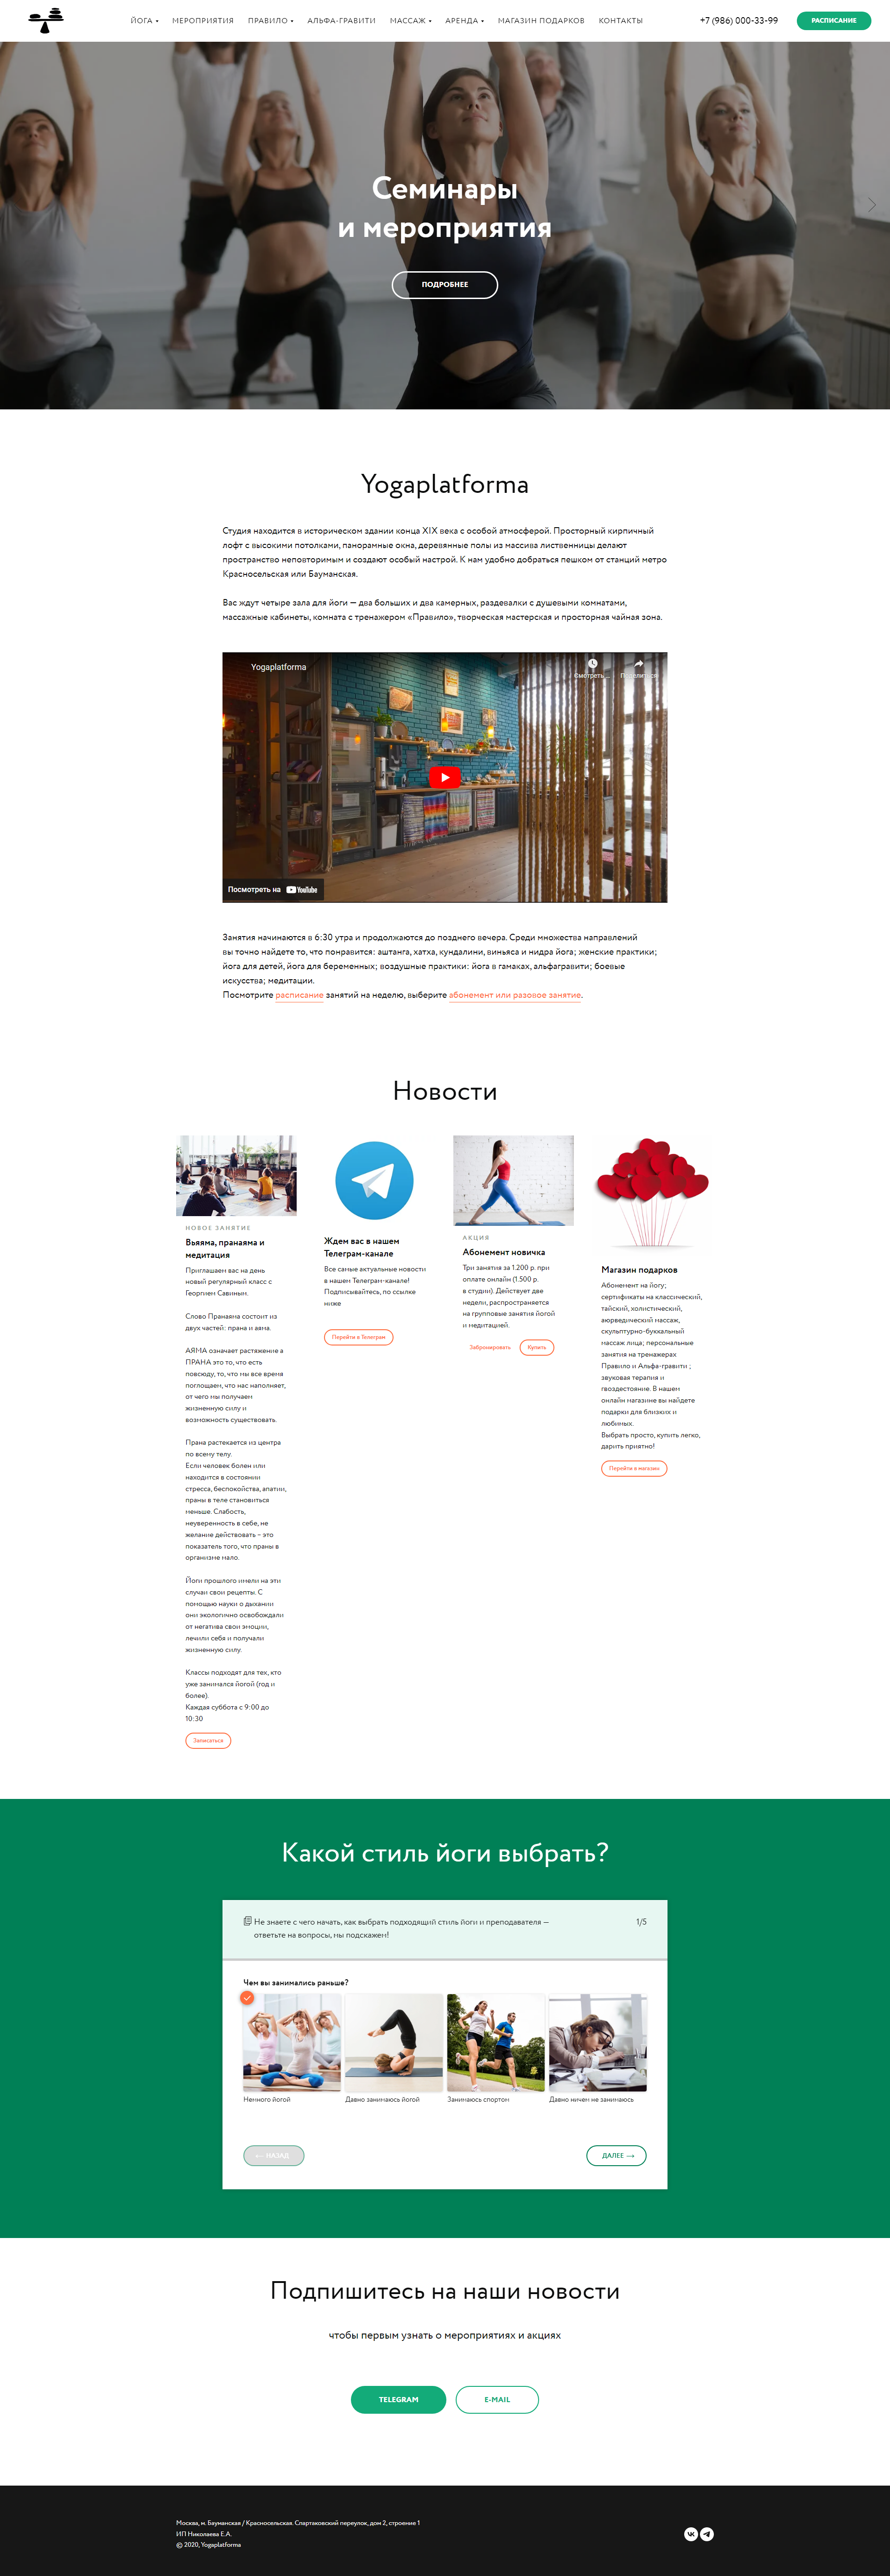 Пример yogaplatforma.ru сайта из рекламной выдачи